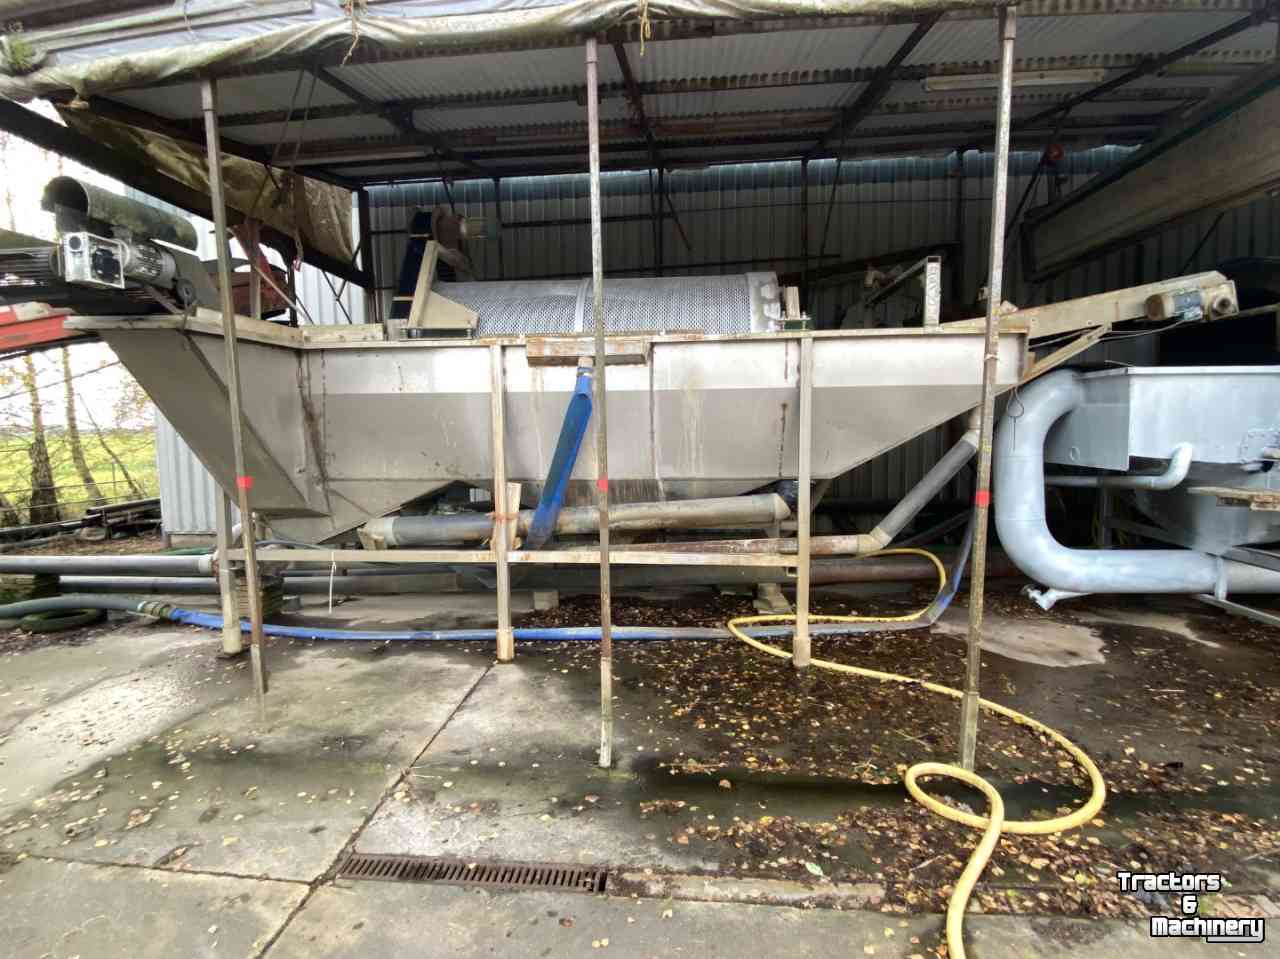 Installation à laver Allround U300, trommelwasser, wastrommel